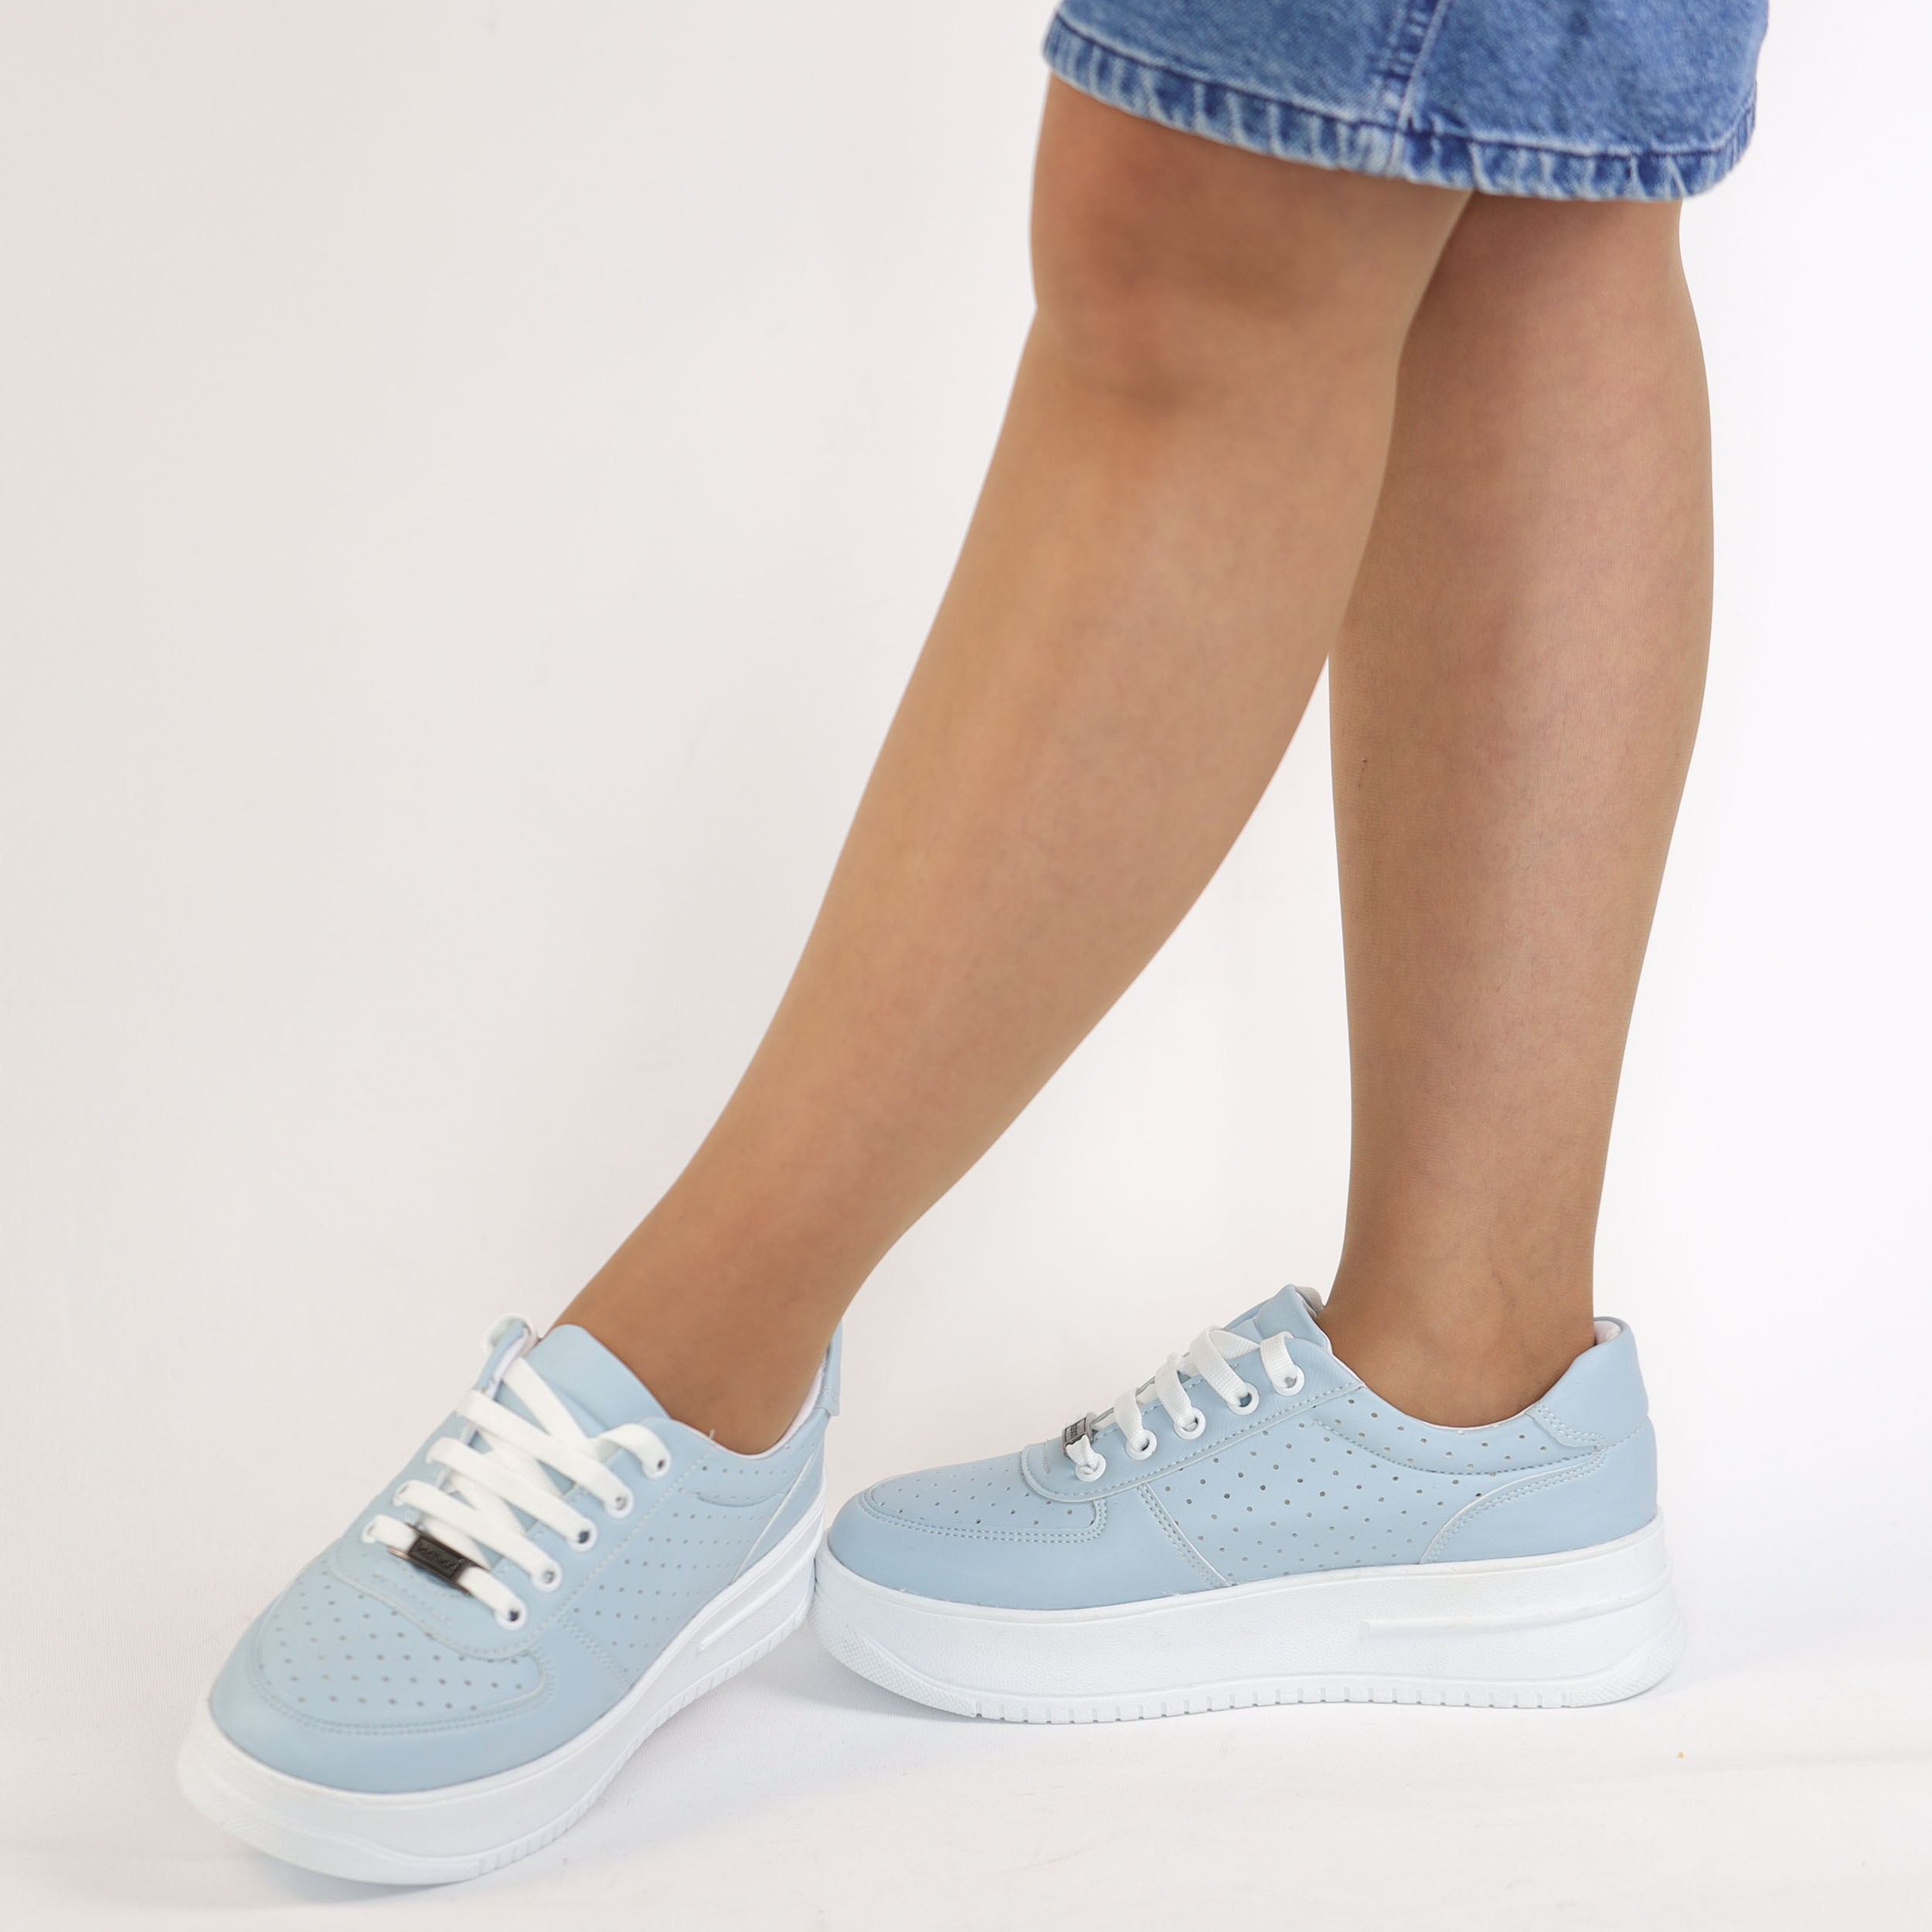 Kadın Kalın Tabanlı Bağcıklı Mavi Sneakers Günlük Spor Rahat Ayakkabı, Renk: Mavi, Beden: 38